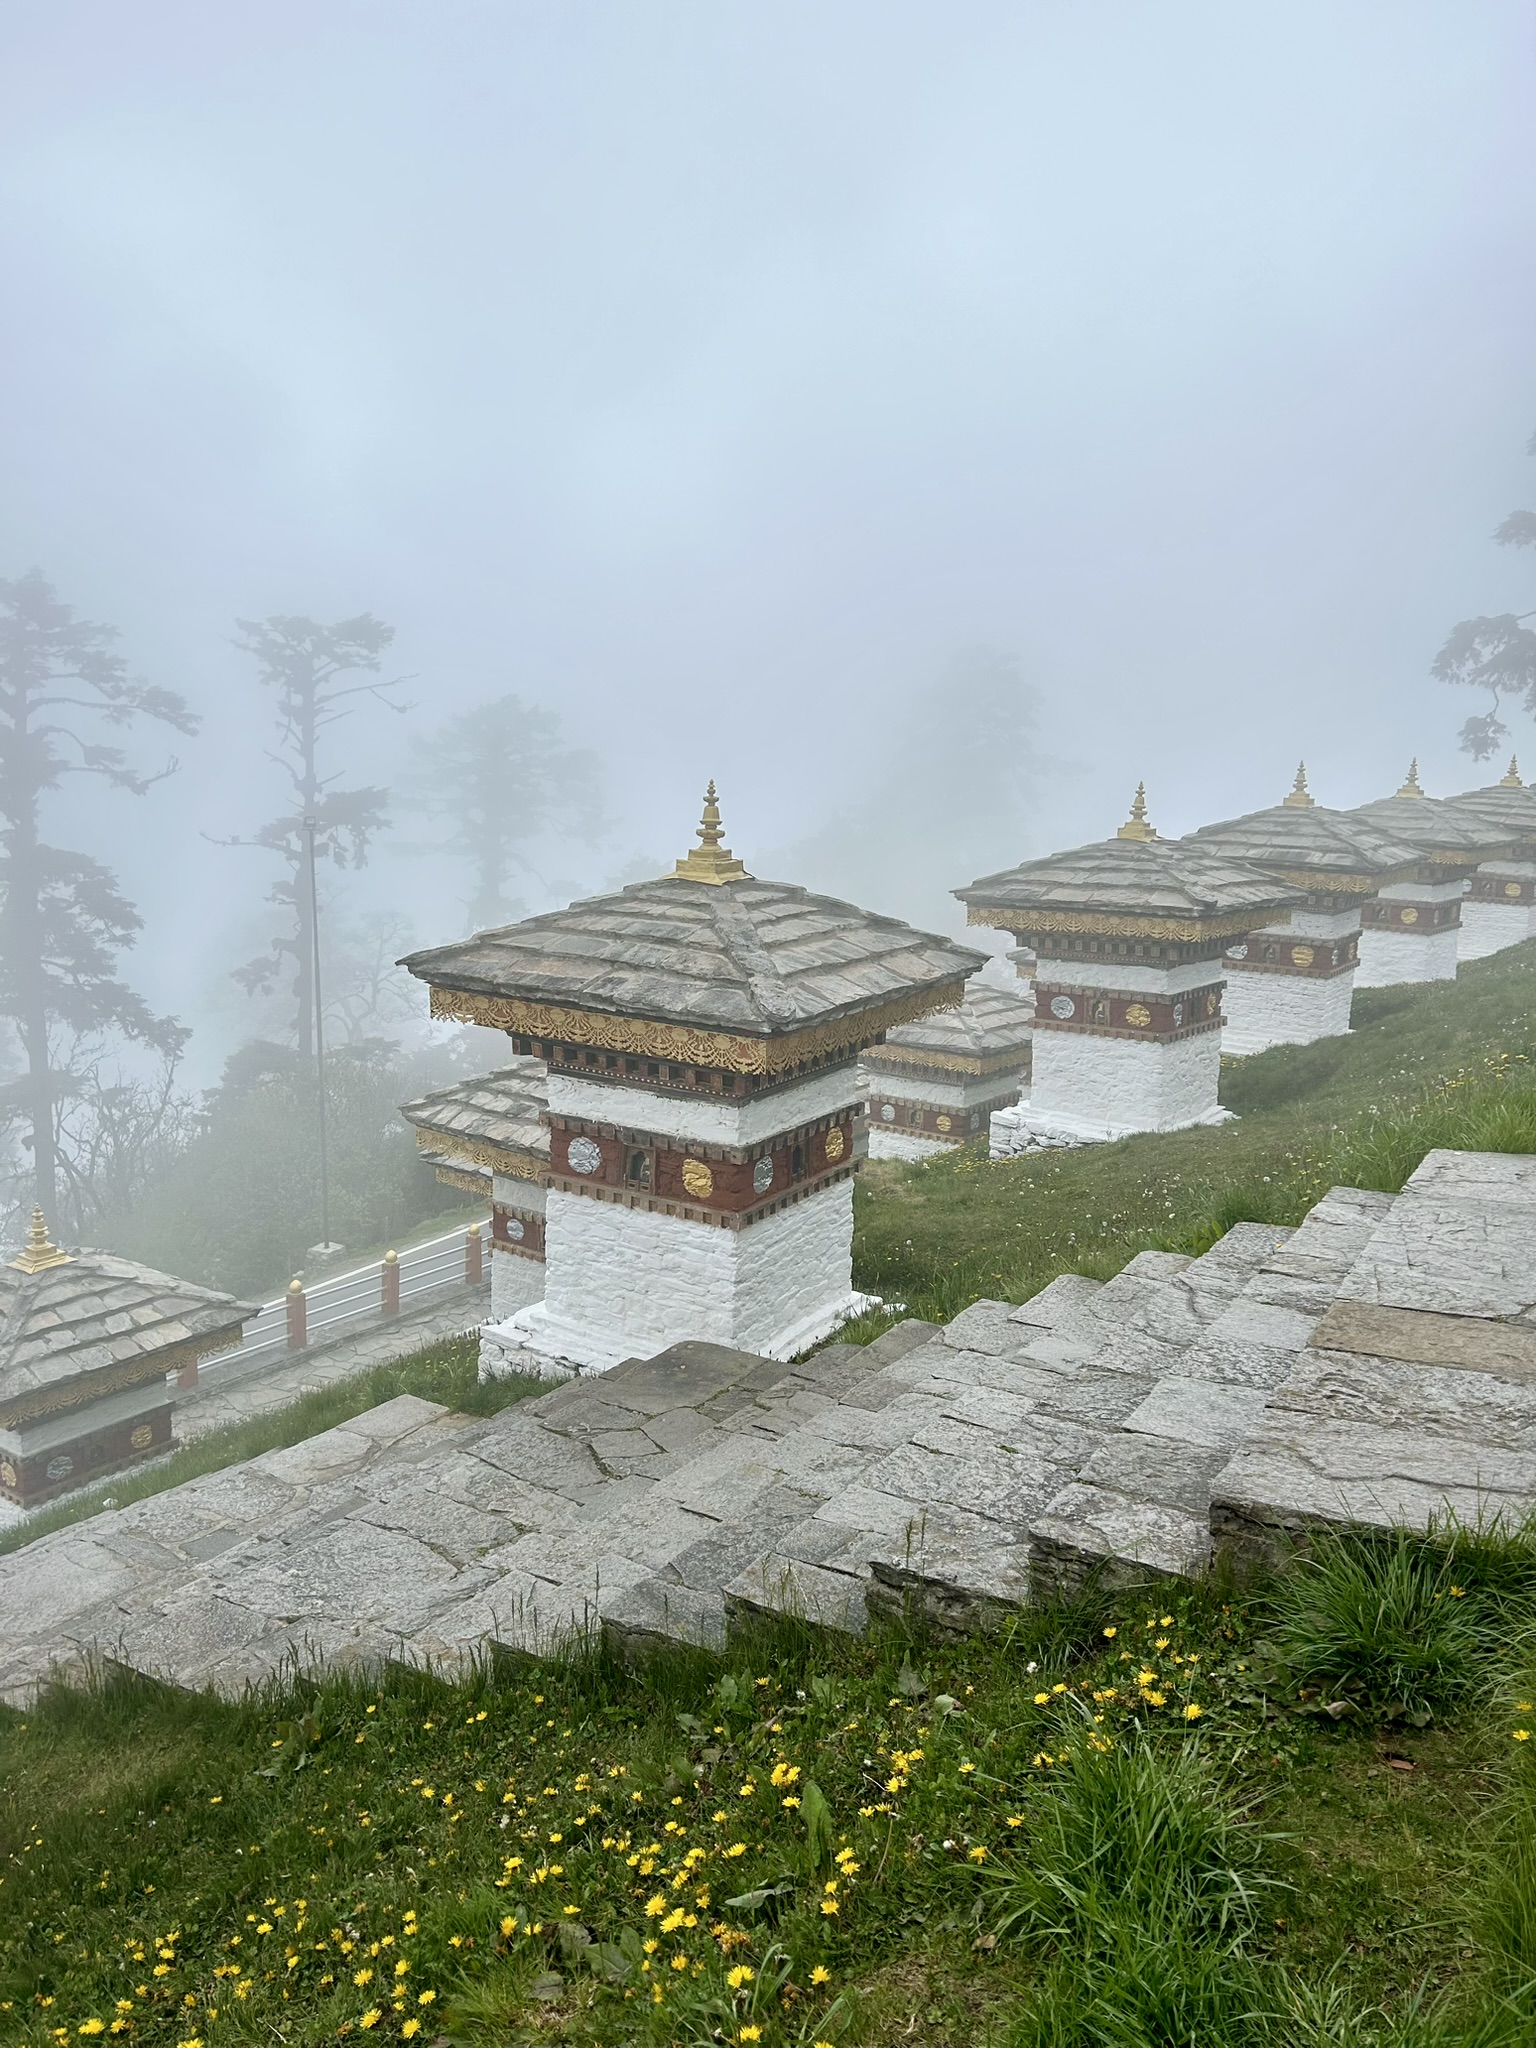 Dochu La Pass in Bhutan